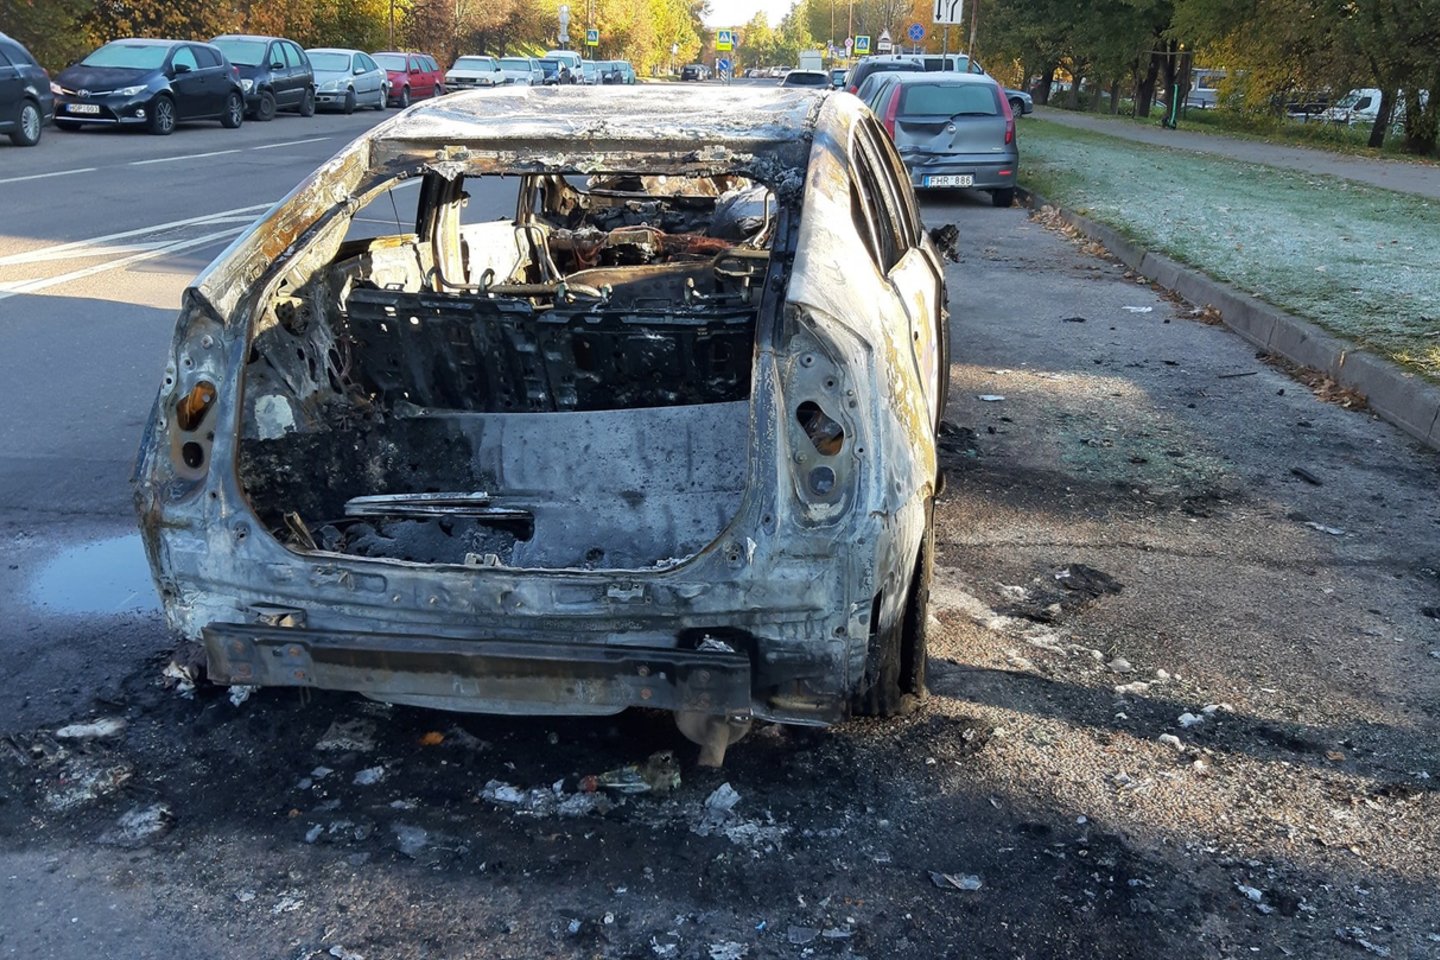  Šeštadienio rytą ant kojų sukelti Vilniaus ugniagesiai: Šeškinės rajone vidury gatvės atvira liepsna degė automobilis.<br> Facebook/ FOTOsportas nuotr.